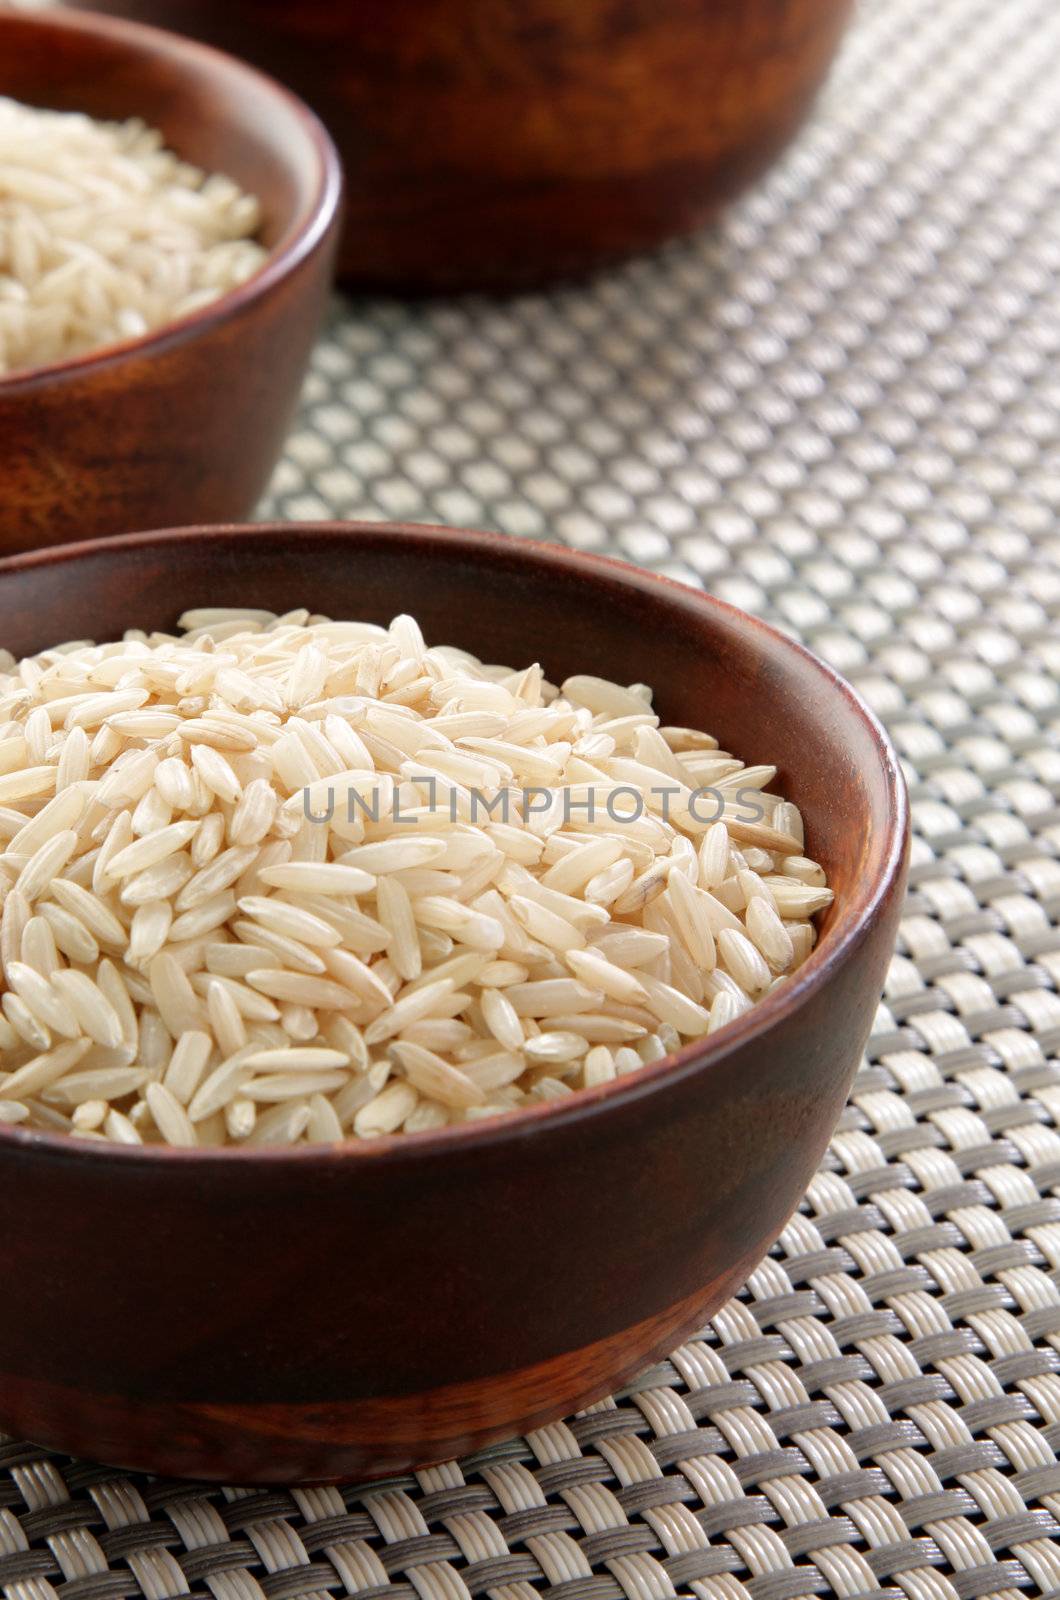 Several bowls of healthy organic basmati rice.